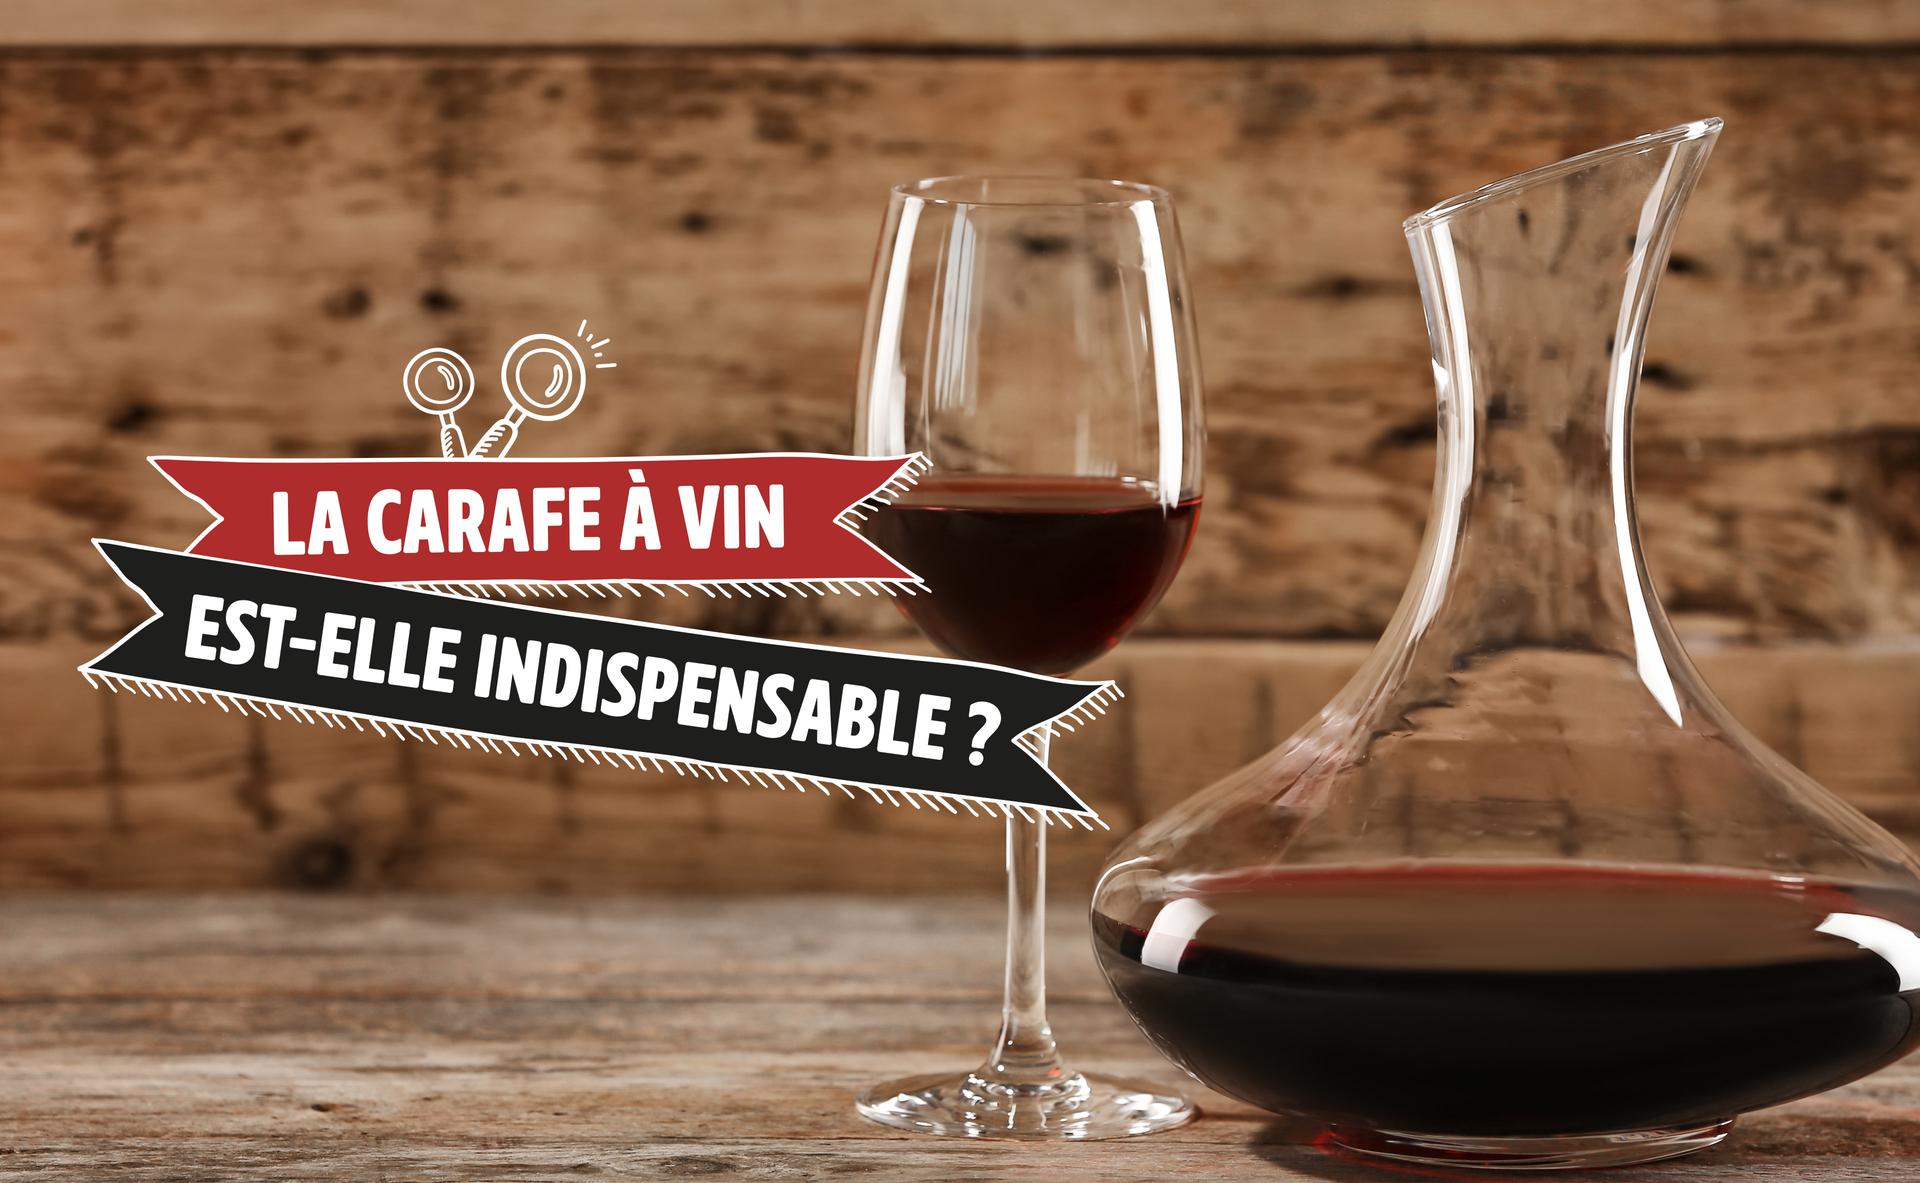 La carafe à vin : est-elle vraiment indispensable ?